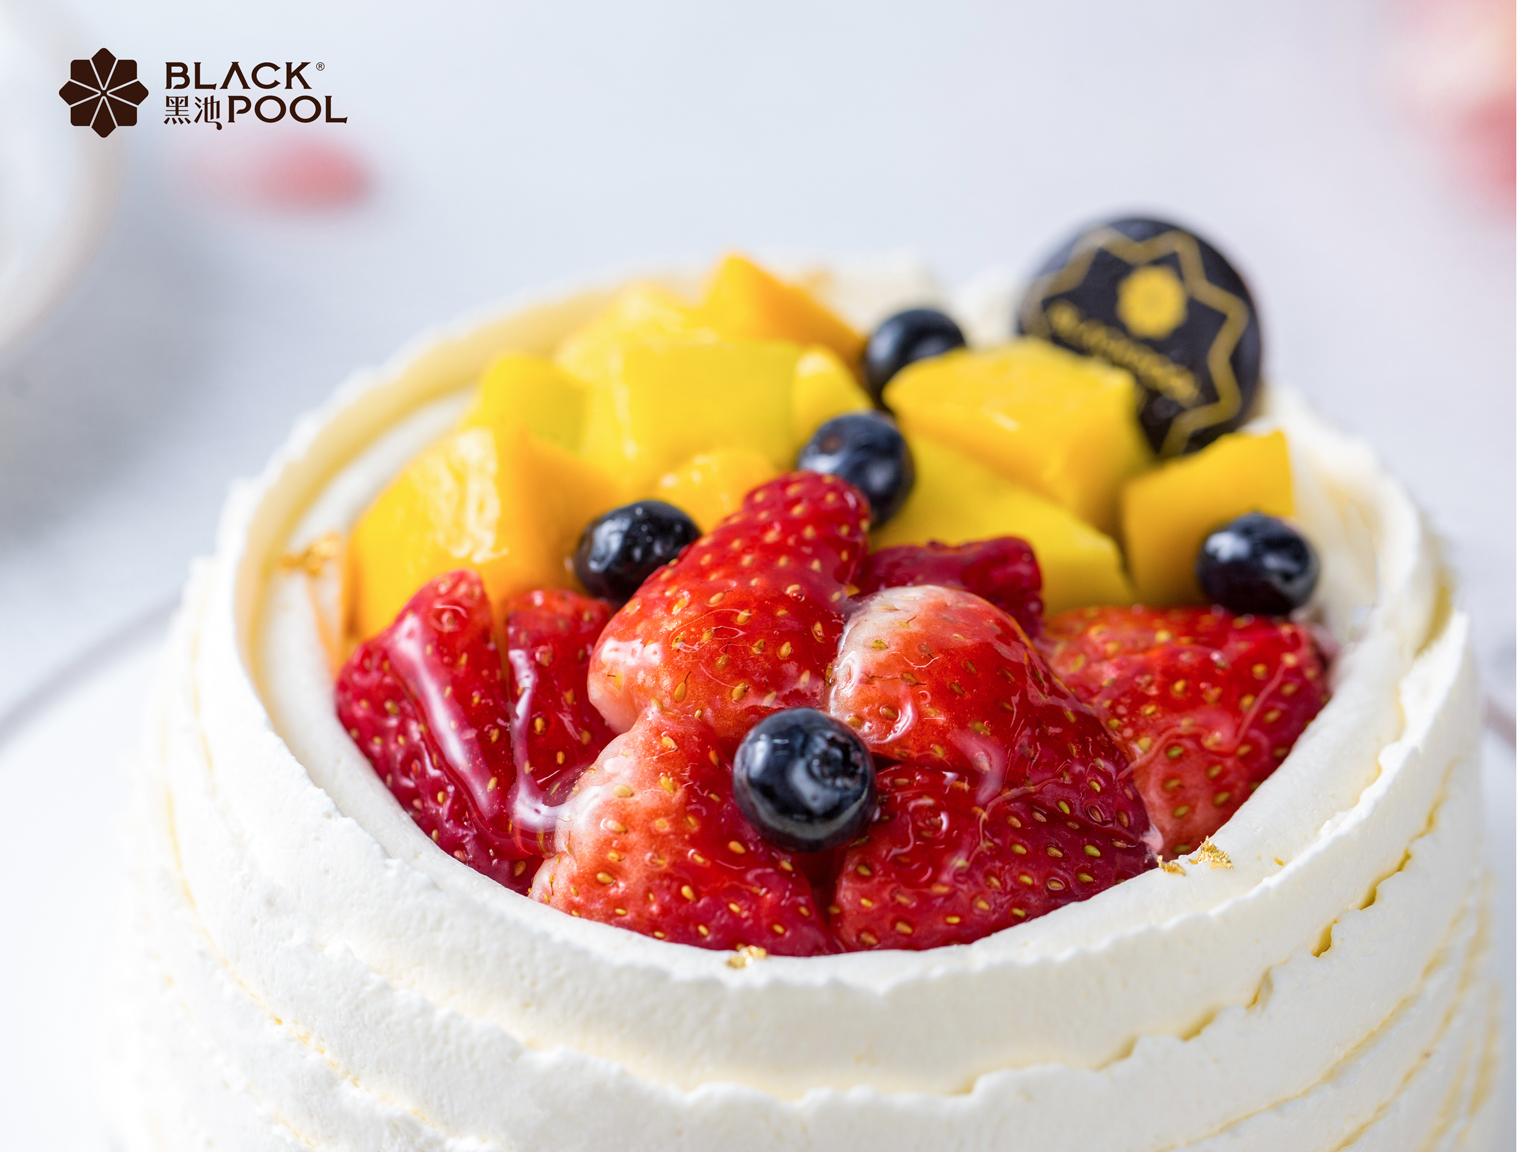 黑池蛋糕_深圳顶级欧式甜点专家,其产品系列为黑池蛋糕,黑池马卡龙,黑池杯子蛋糕